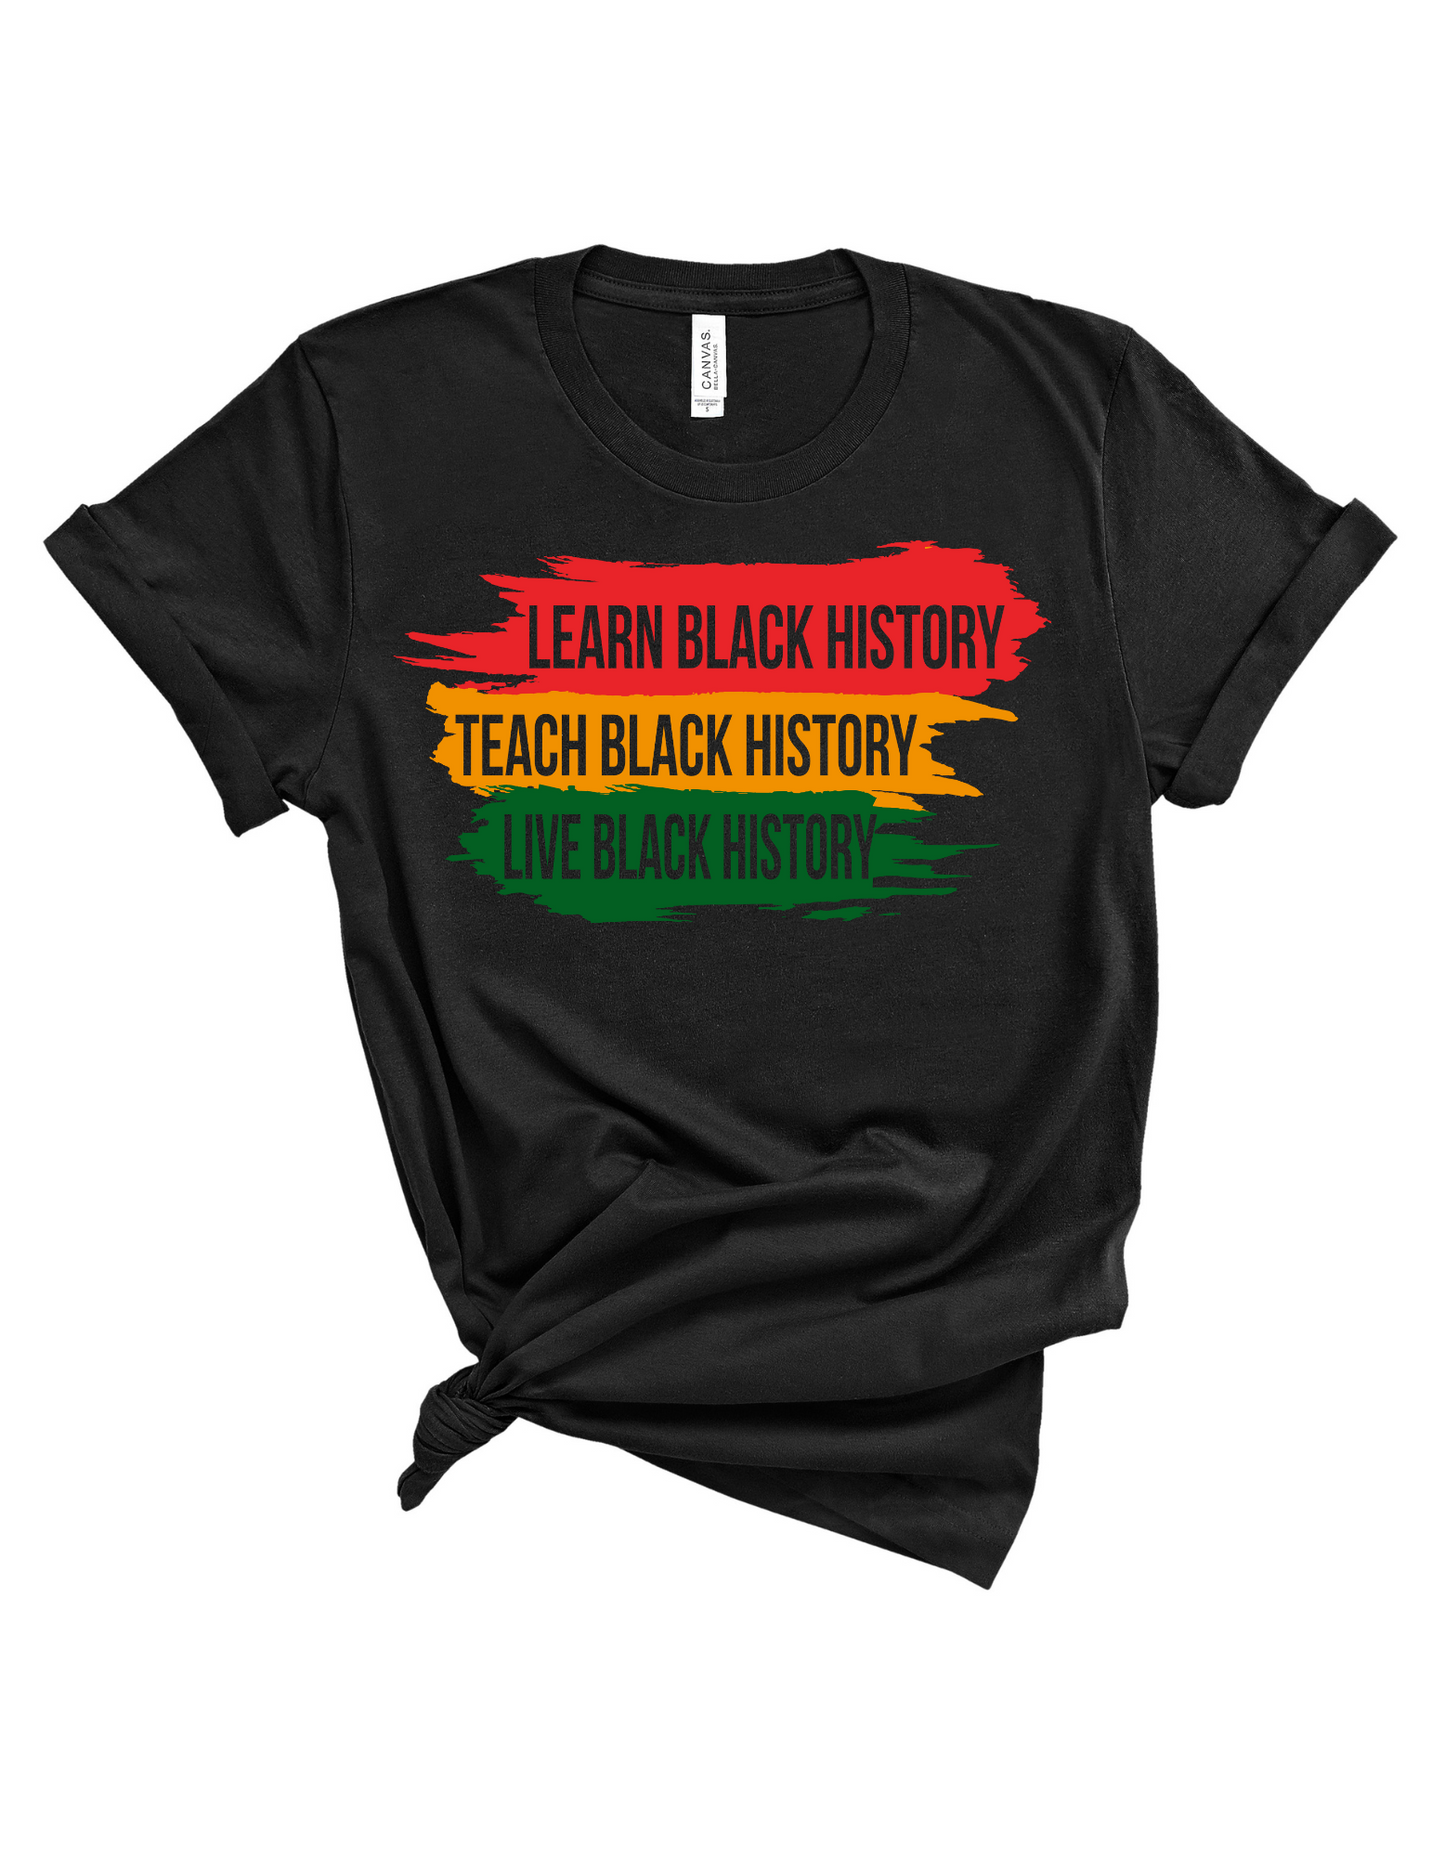 Teach Black History Tee